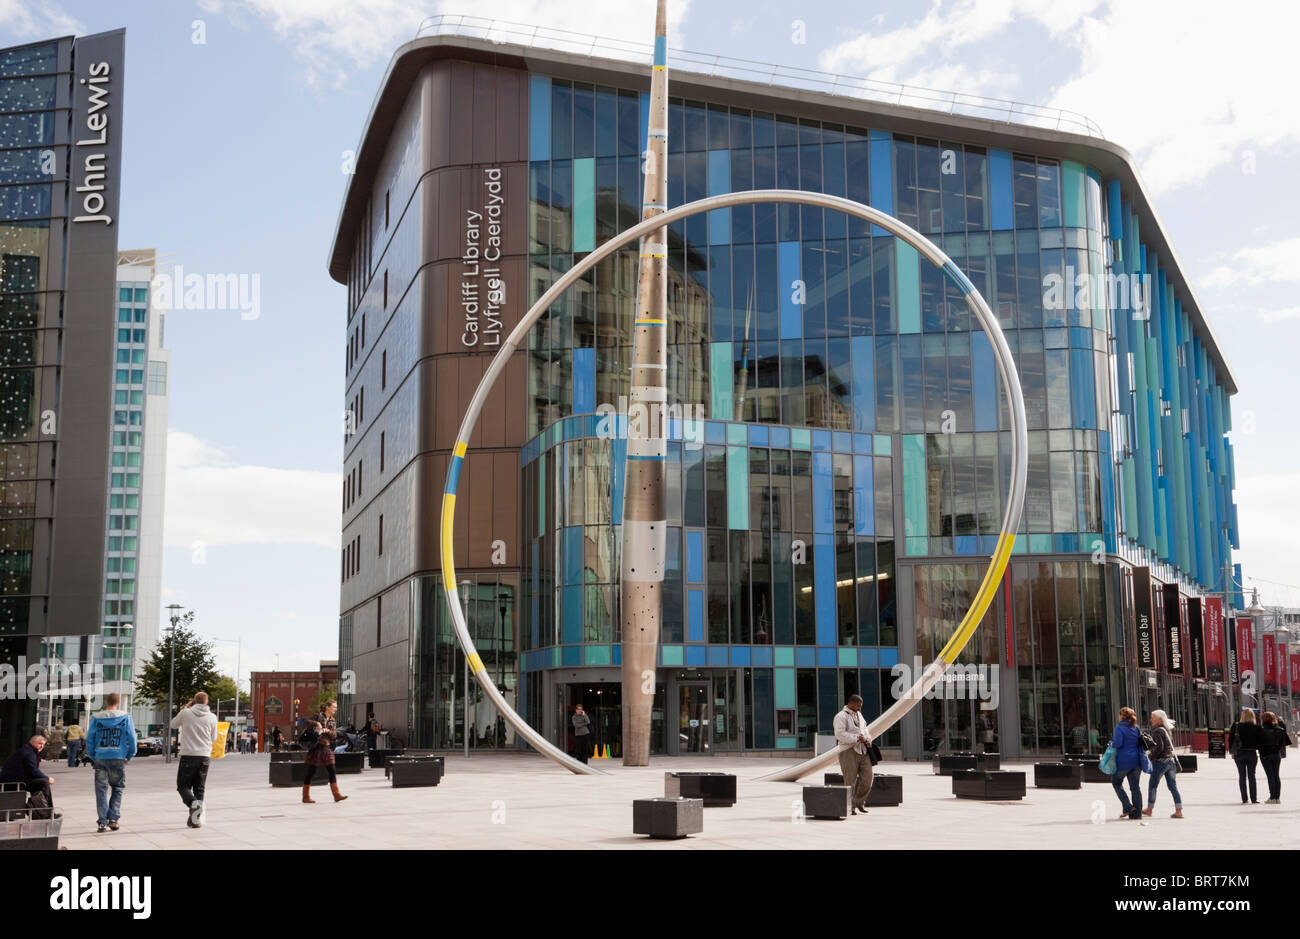 Scène de rue à l'extérieur de la bibliothèque centrale publique moderne et Sculpture metal Alliance en zone piétonnière. Cardiff (Caerdydd), Glamorgan, Pays de Galles, Royaume-Uni Banque D'Images